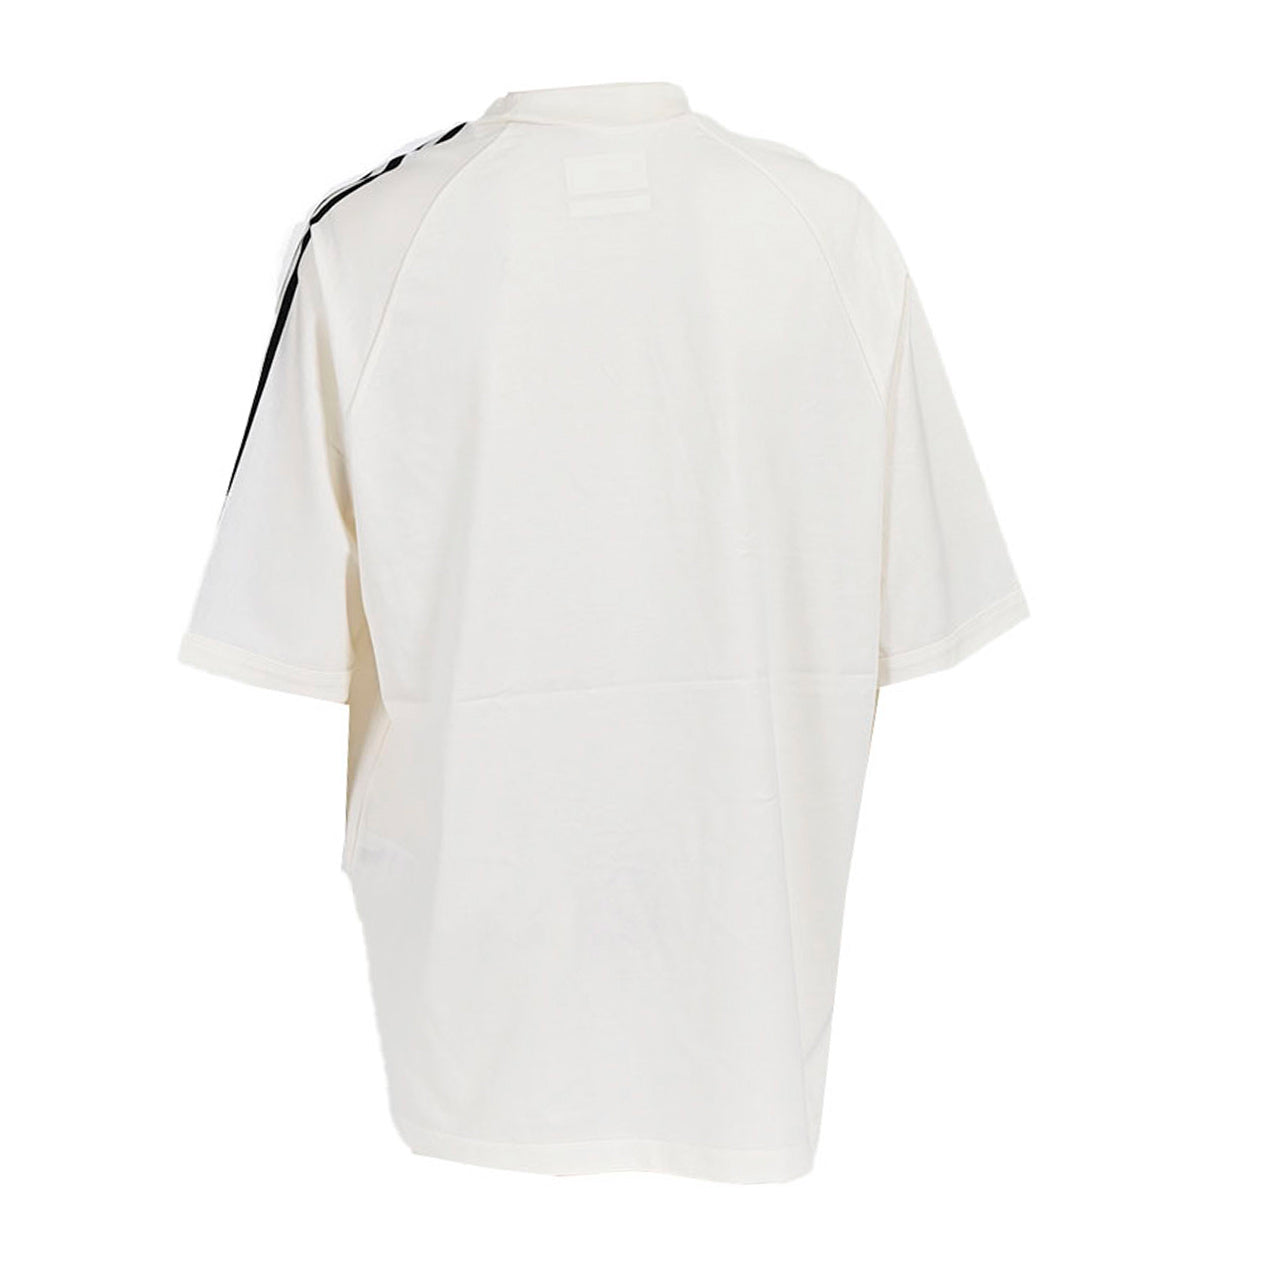 ワイスリー Y-3 Tシャツ HZ8871 ホワイト 2023AW メンズ